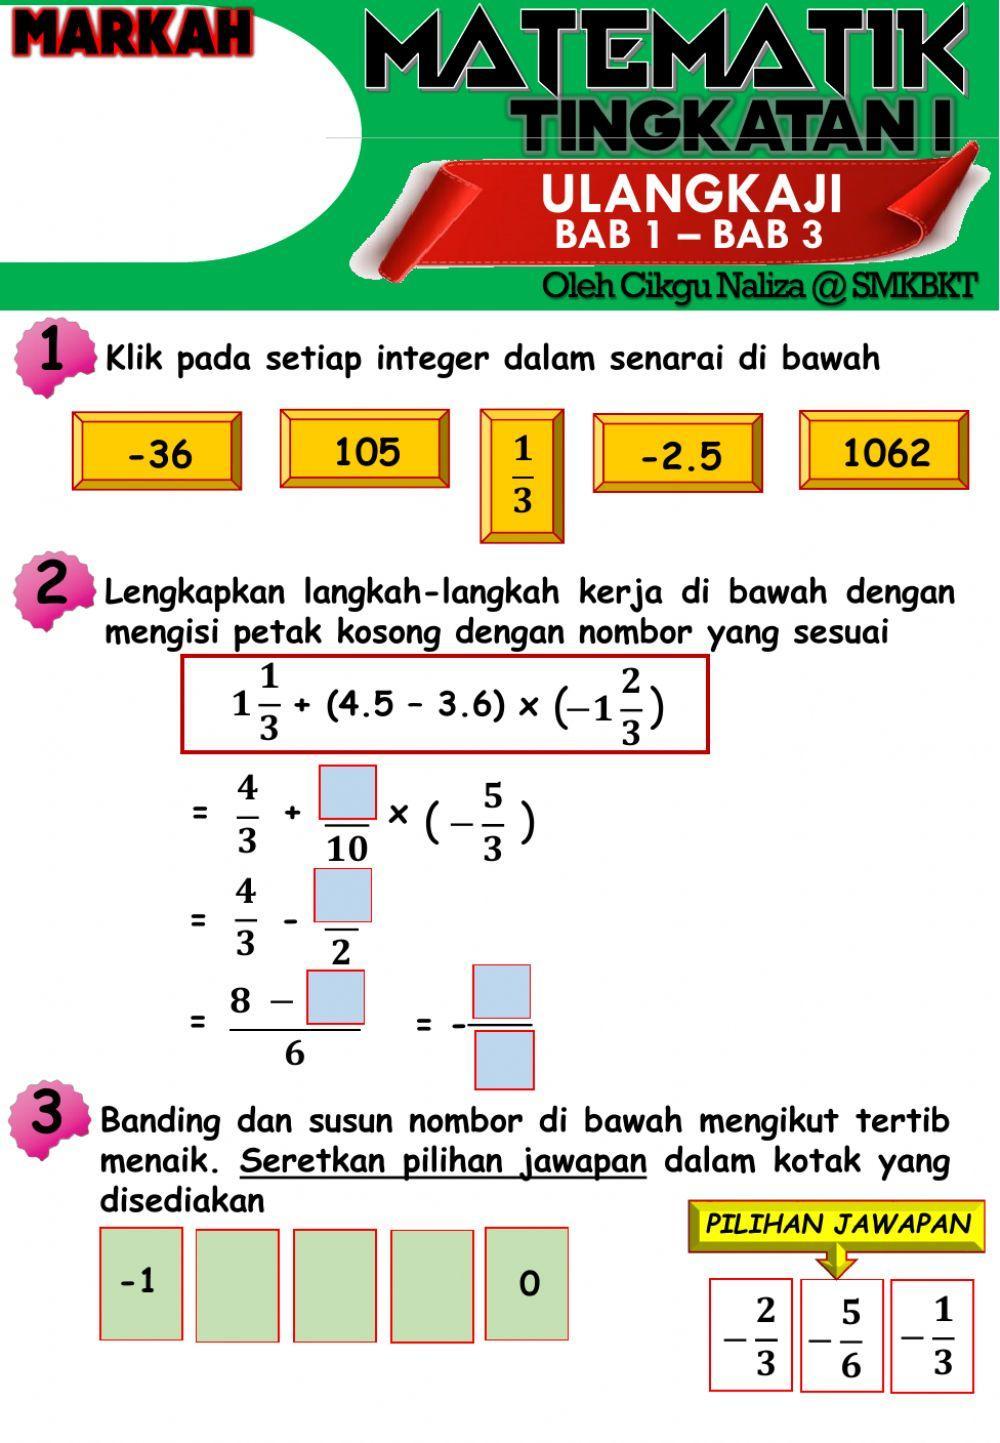 Matematik tingkatan 1(bab 1-bab 3)